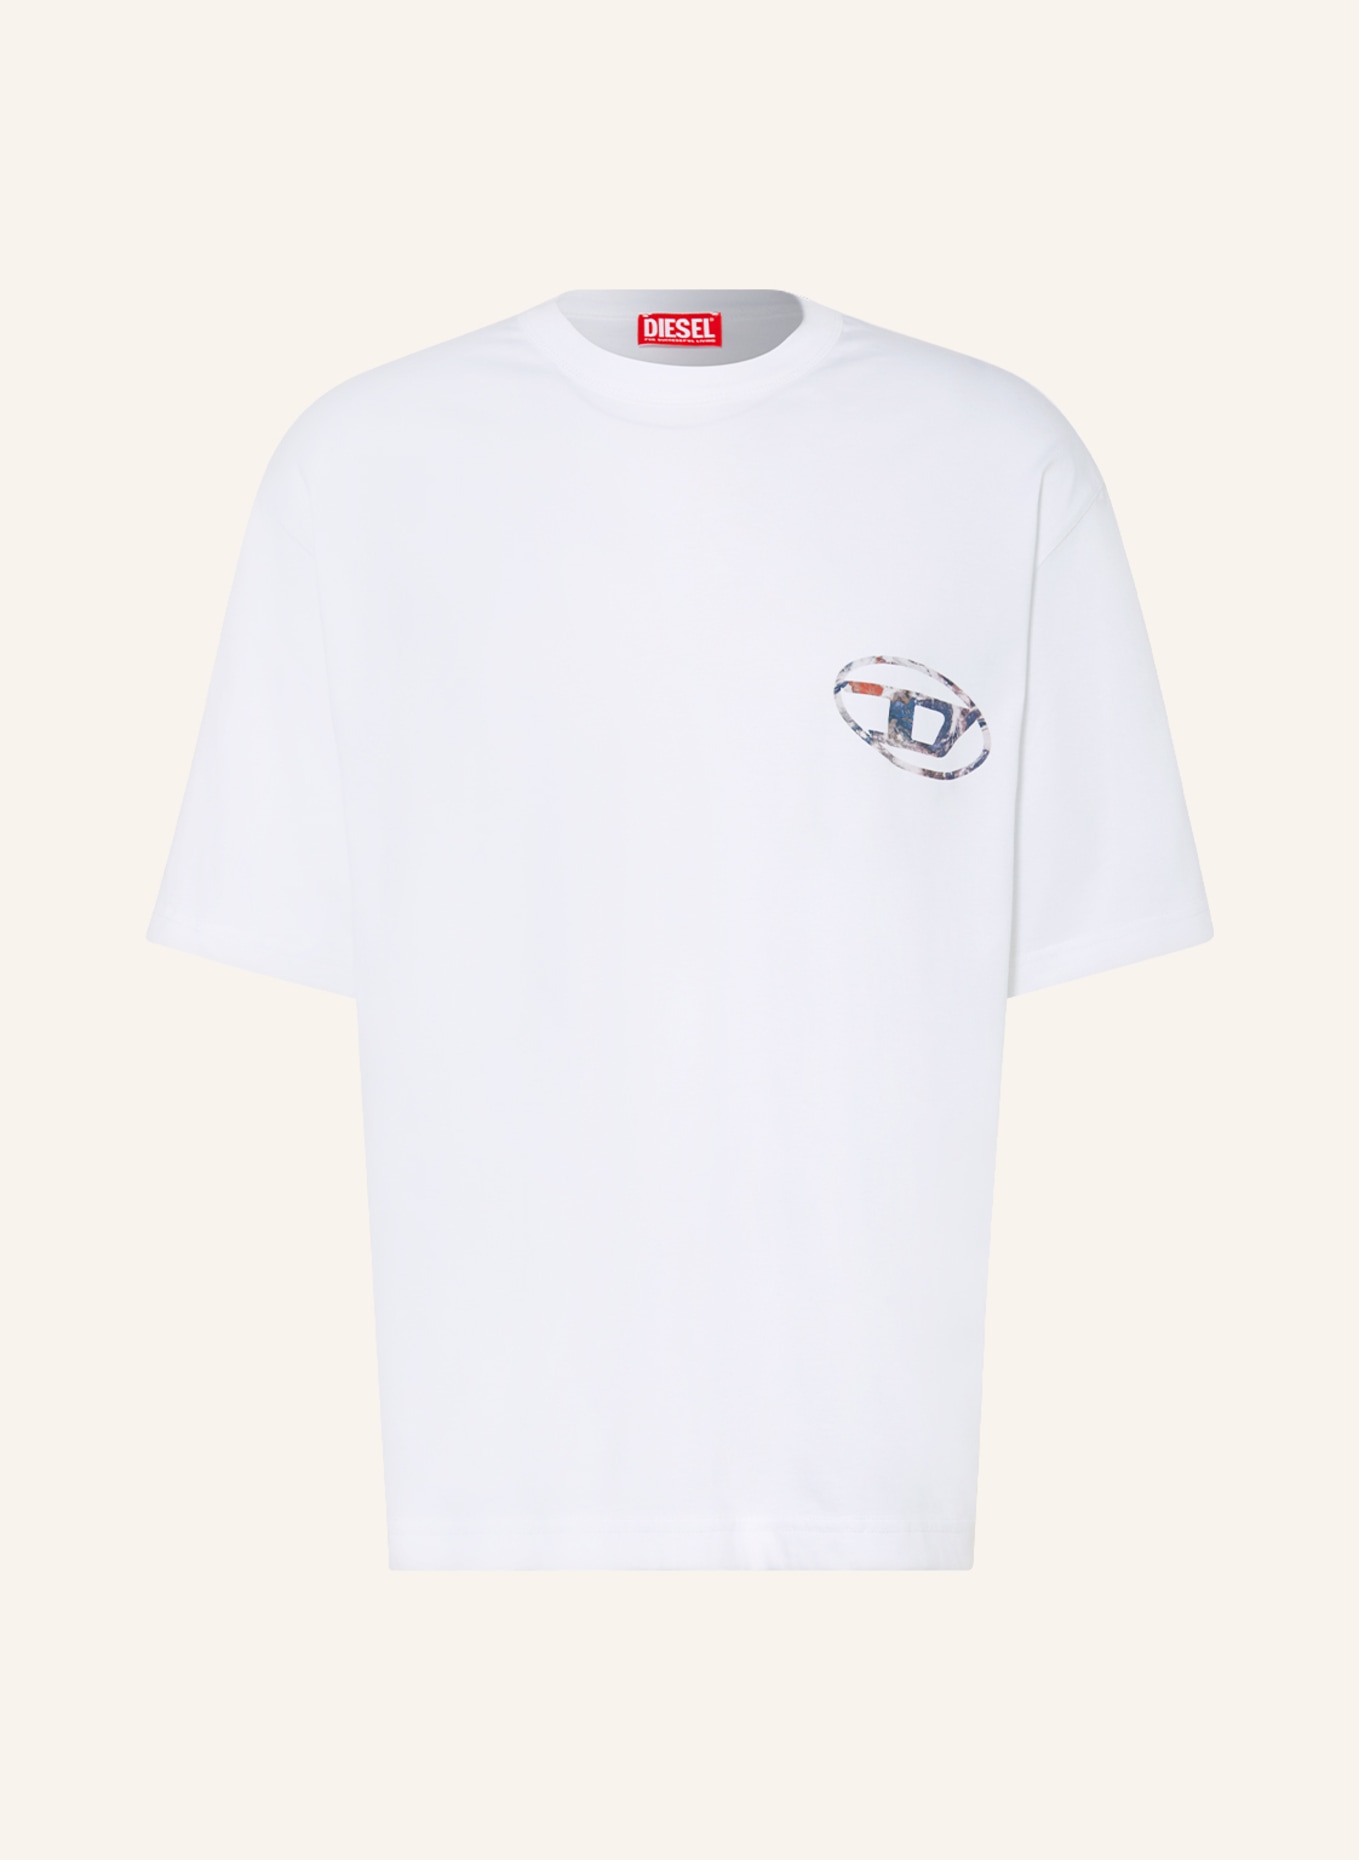 DIESEL T-shirt T-WASH-L6, Color: WHITE (Image 1)